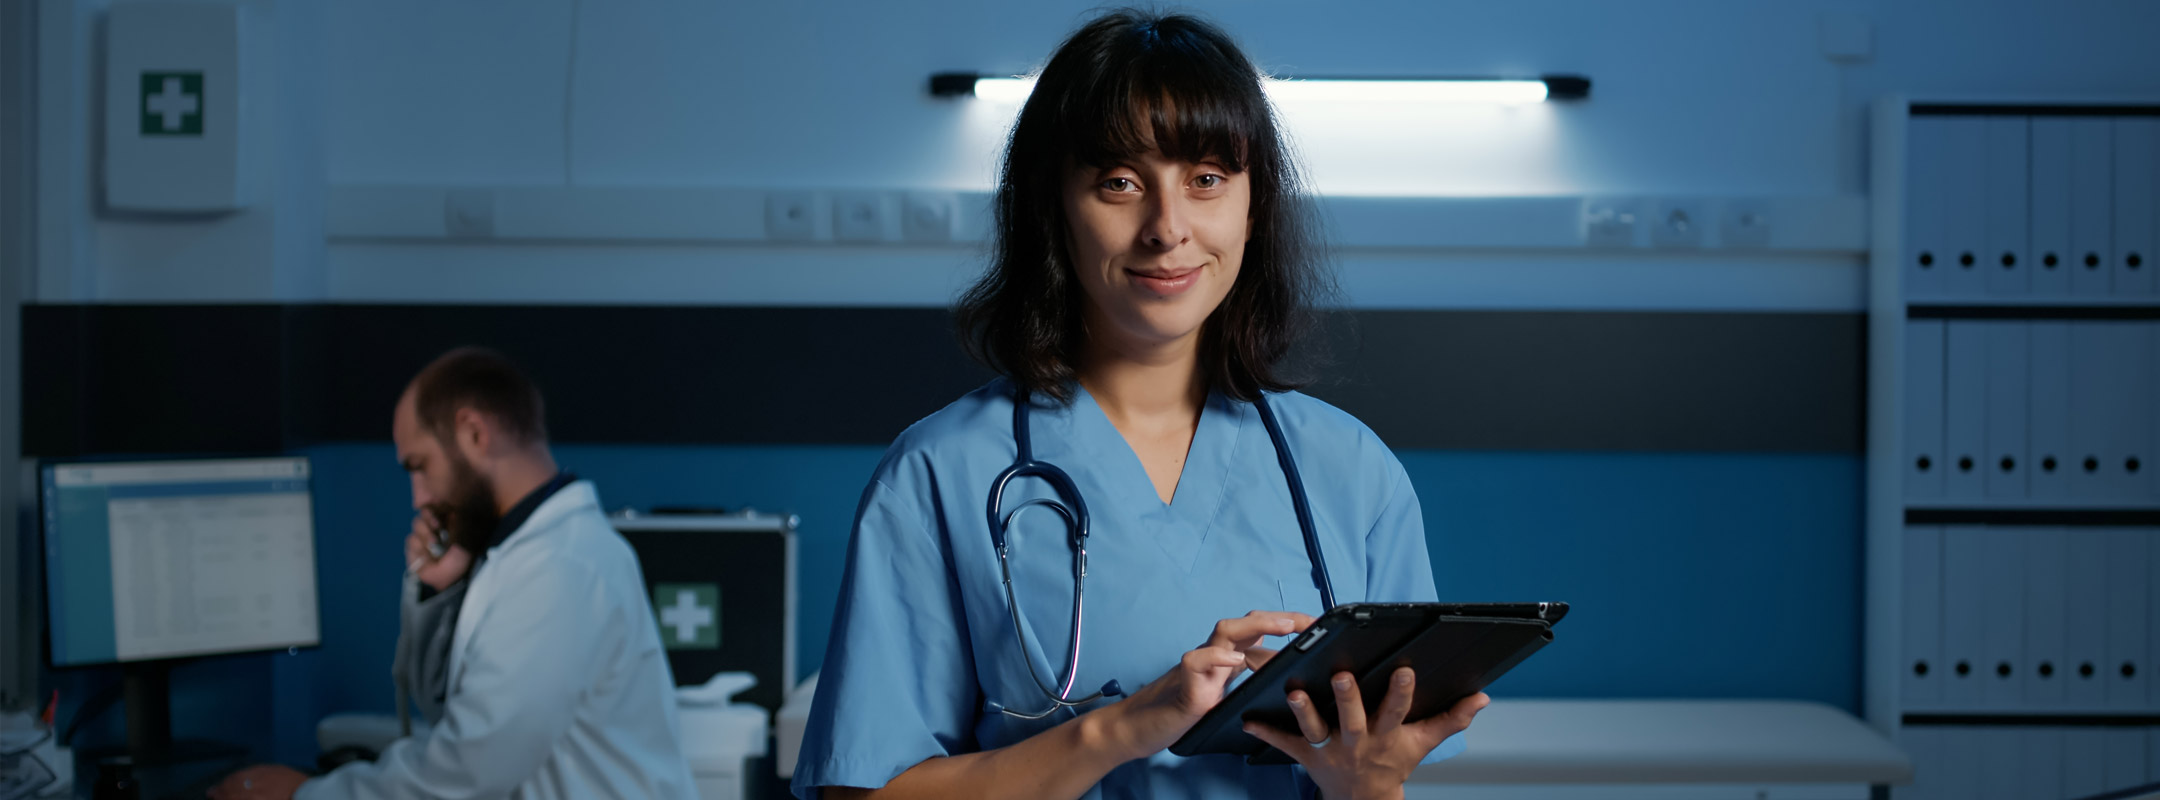 Eine Krankenschwester in der Nacht an einem Tablet